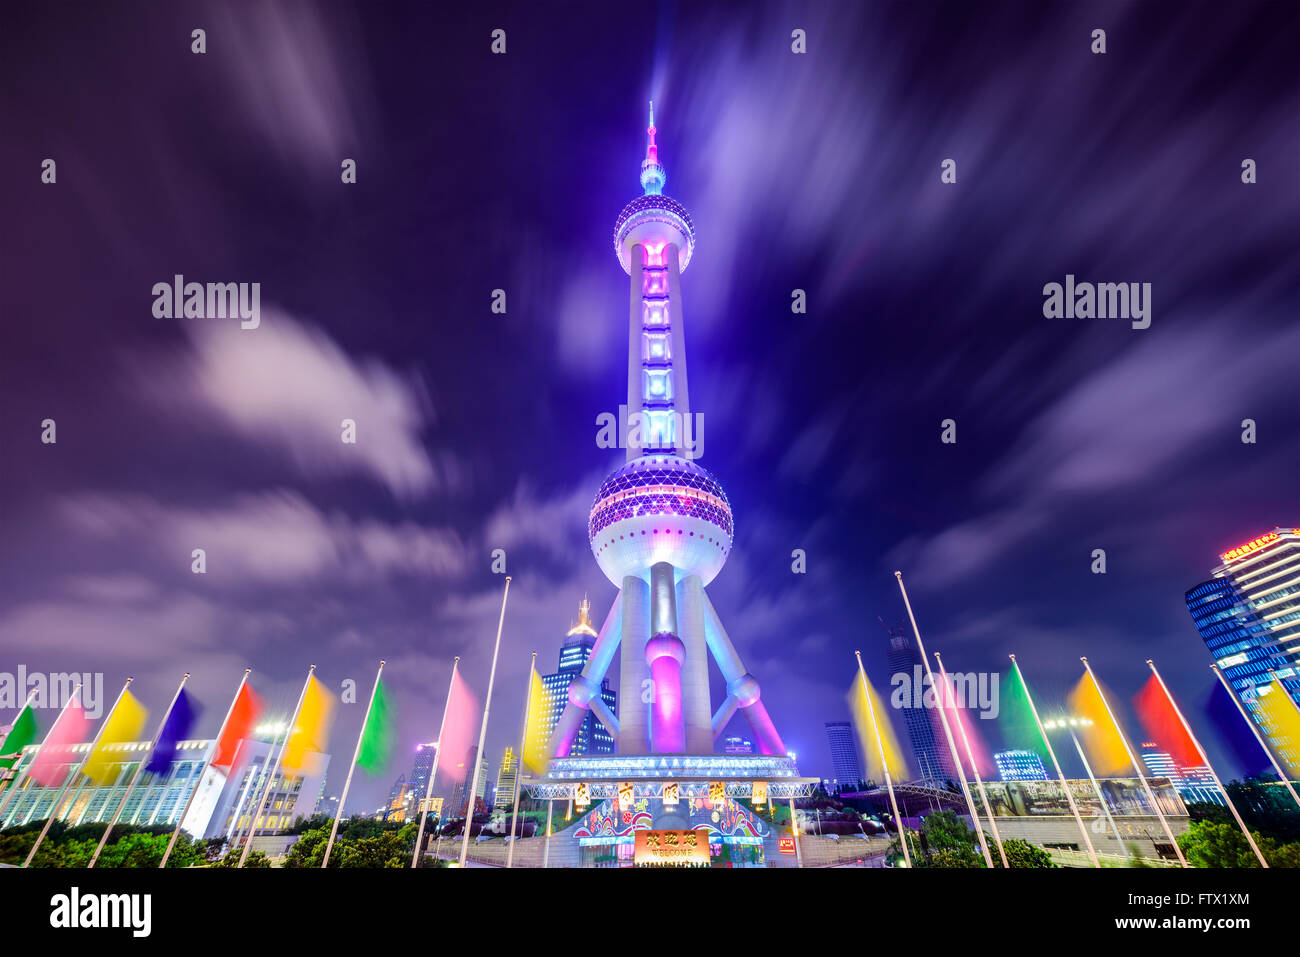 El hito de la Oriental Pearl Tower de noche en el distrito financiero de Lujiazui, en Shanghai, China. Foto de stock